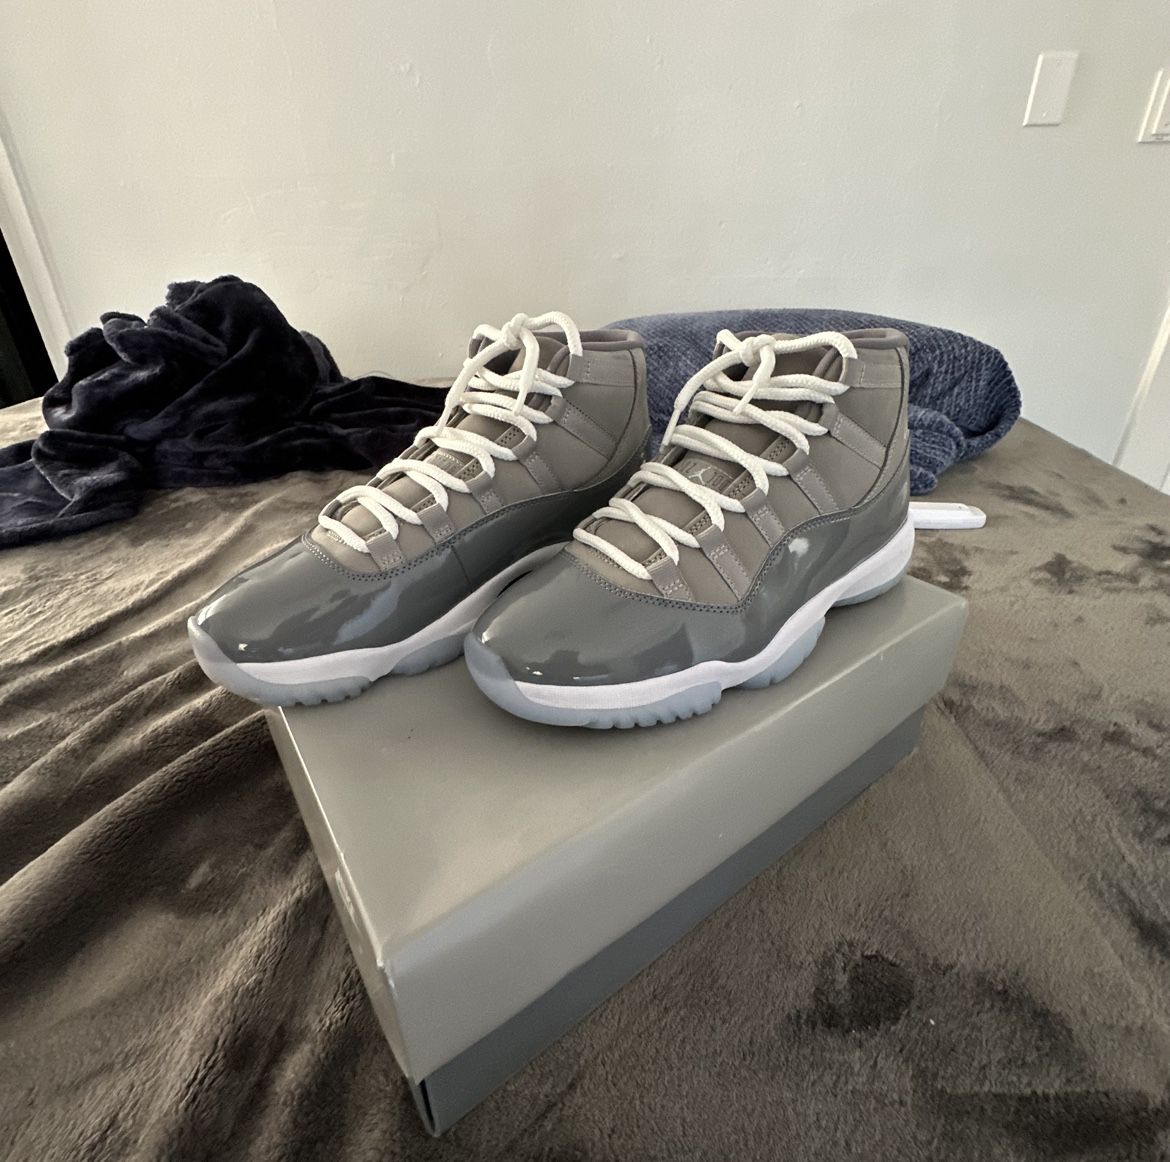 Jordan’s Cool Grey 11